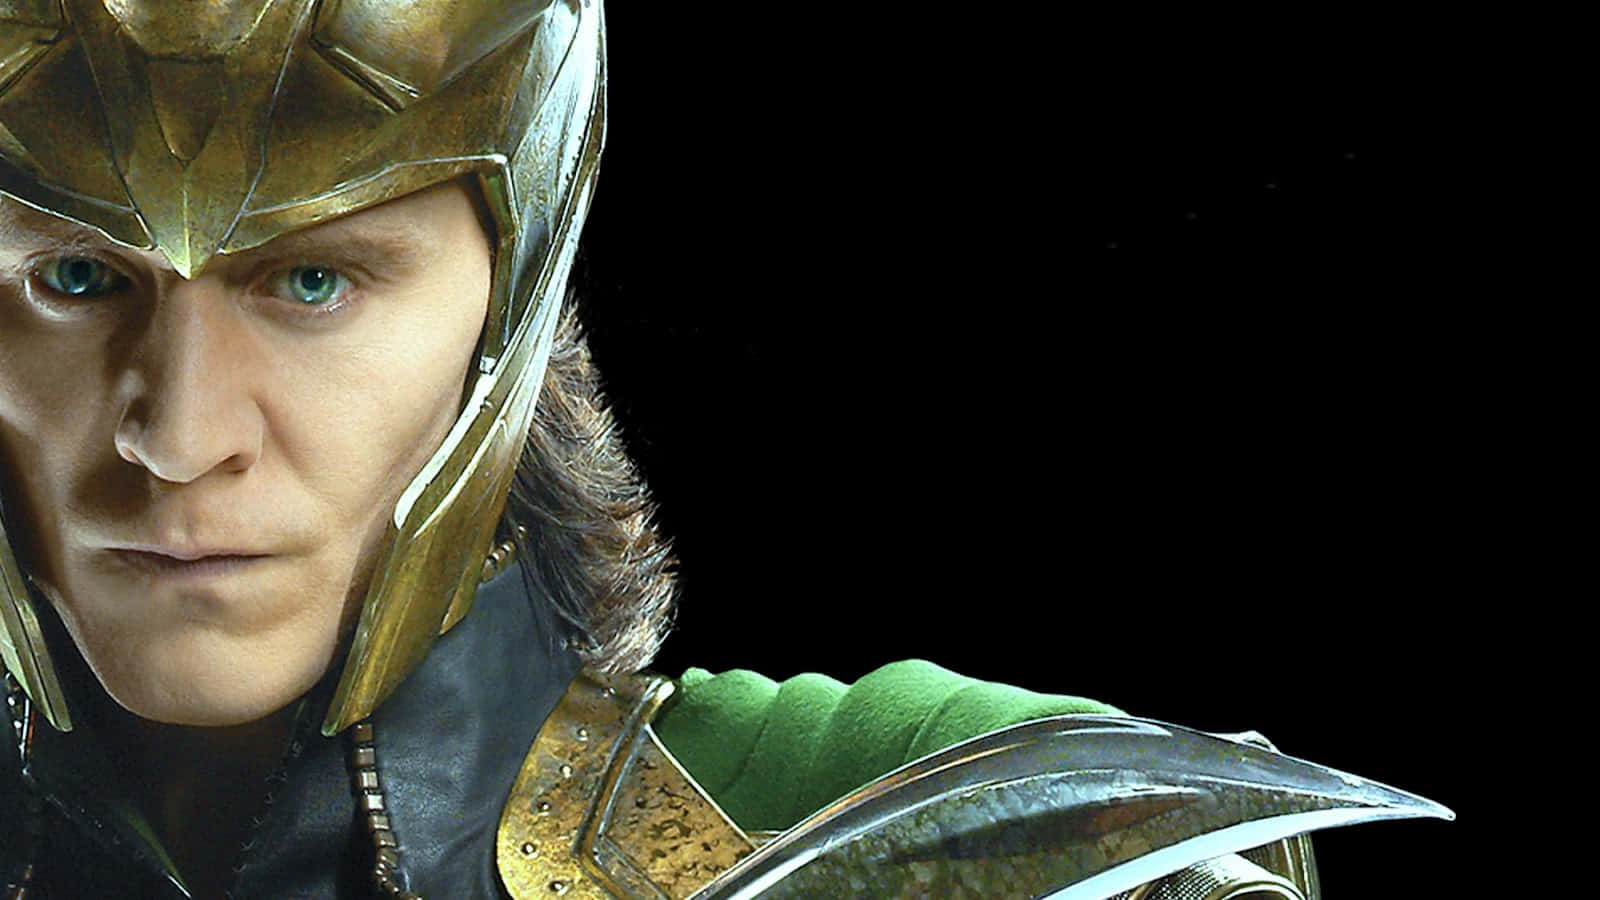 Mischievous Loki wielding his scepter